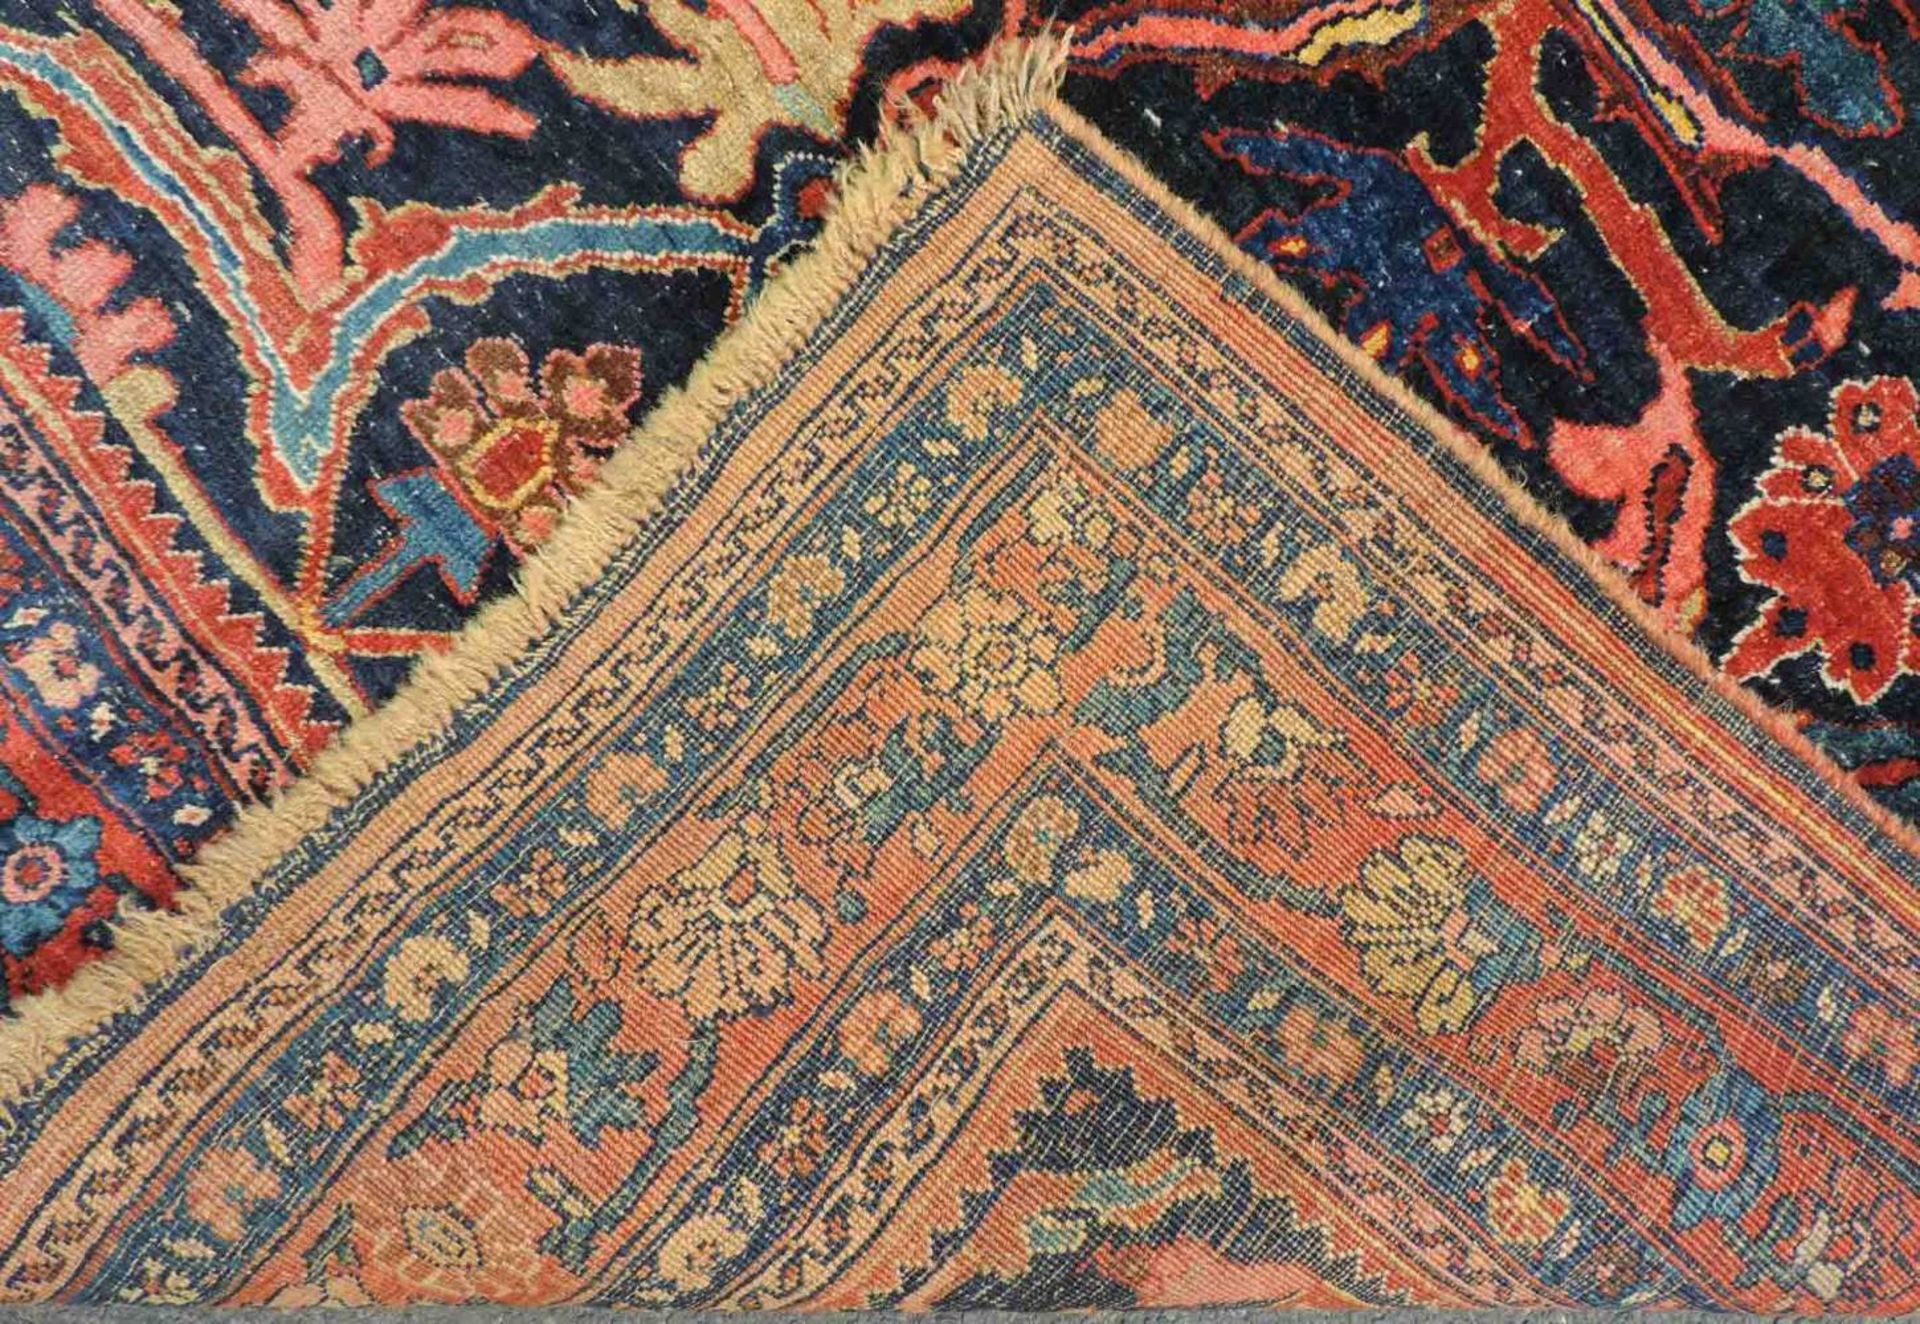 Bidjar Dorfteppich, Iran. Antik, um 1900. 214 cm x 160 cm. Handgeknüpft in Persien. Noch Wolle auf - Image 2 of 11